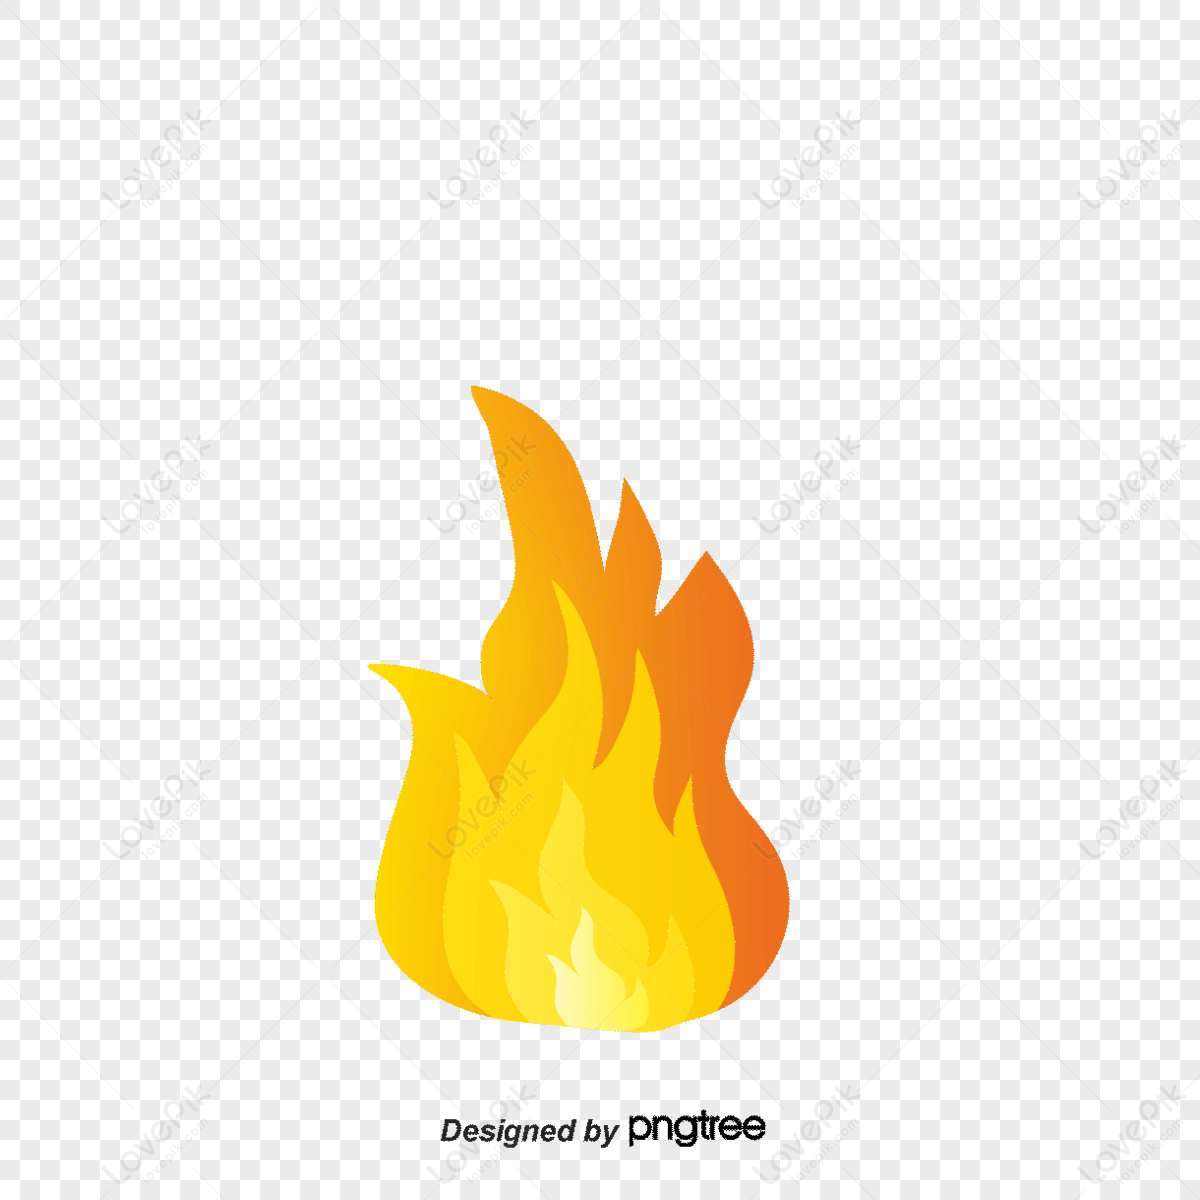 Black Free Fire Logo Battlegrounds | Citypng